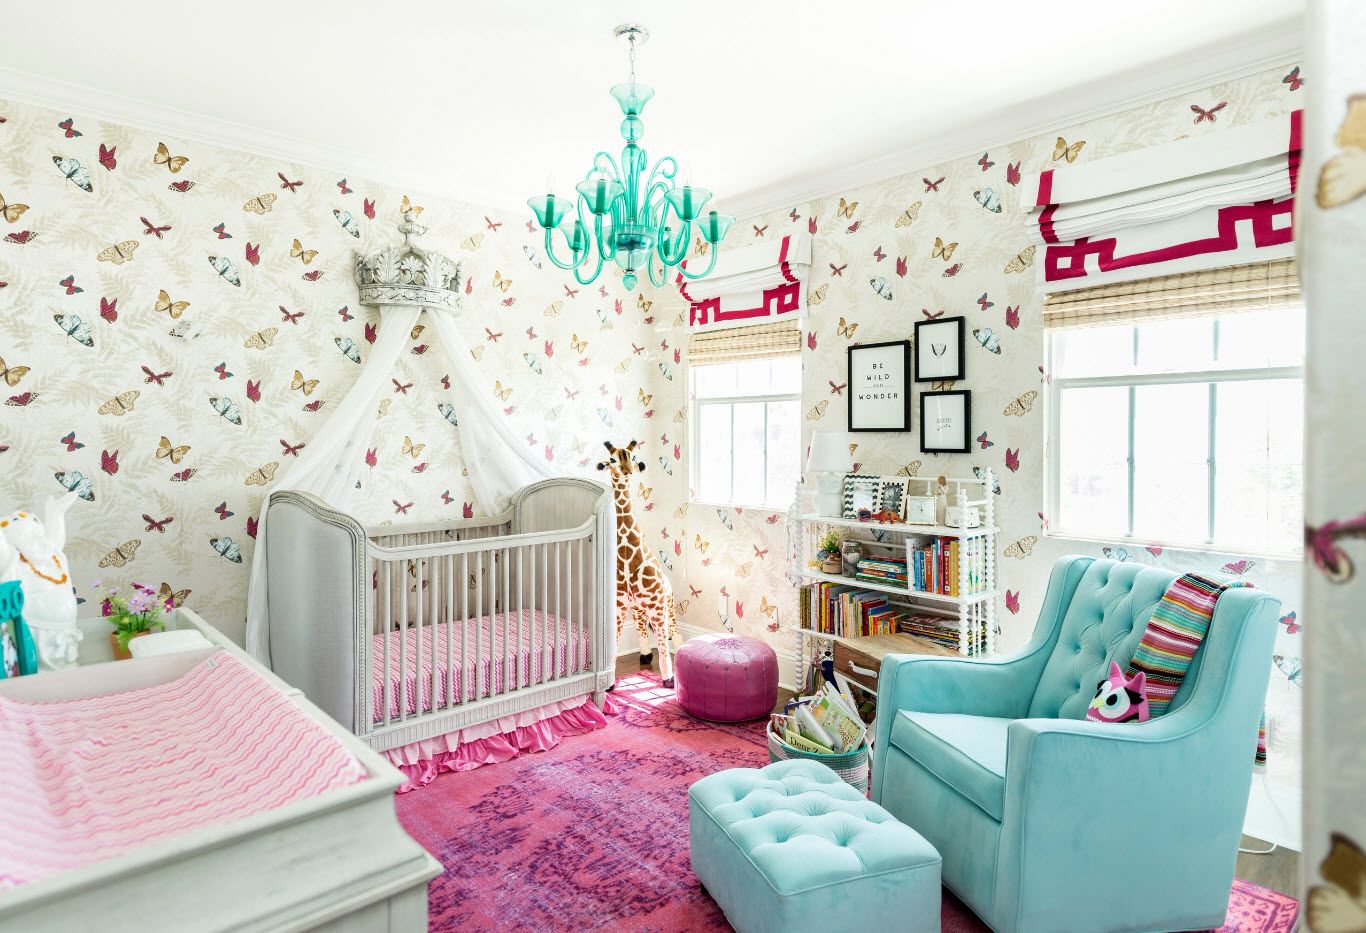 Bright nursery in pop-art style